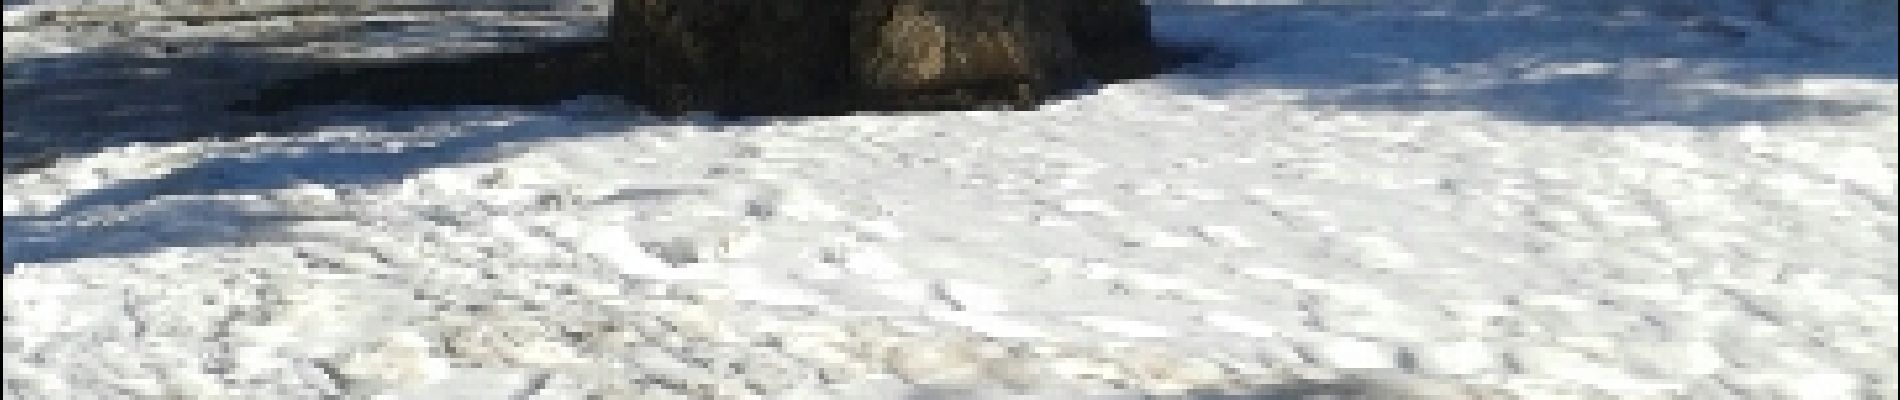 Excursión Raquetas de nieve Railleu - Coll de creu Coll de Sansa  pla de grill - Photo